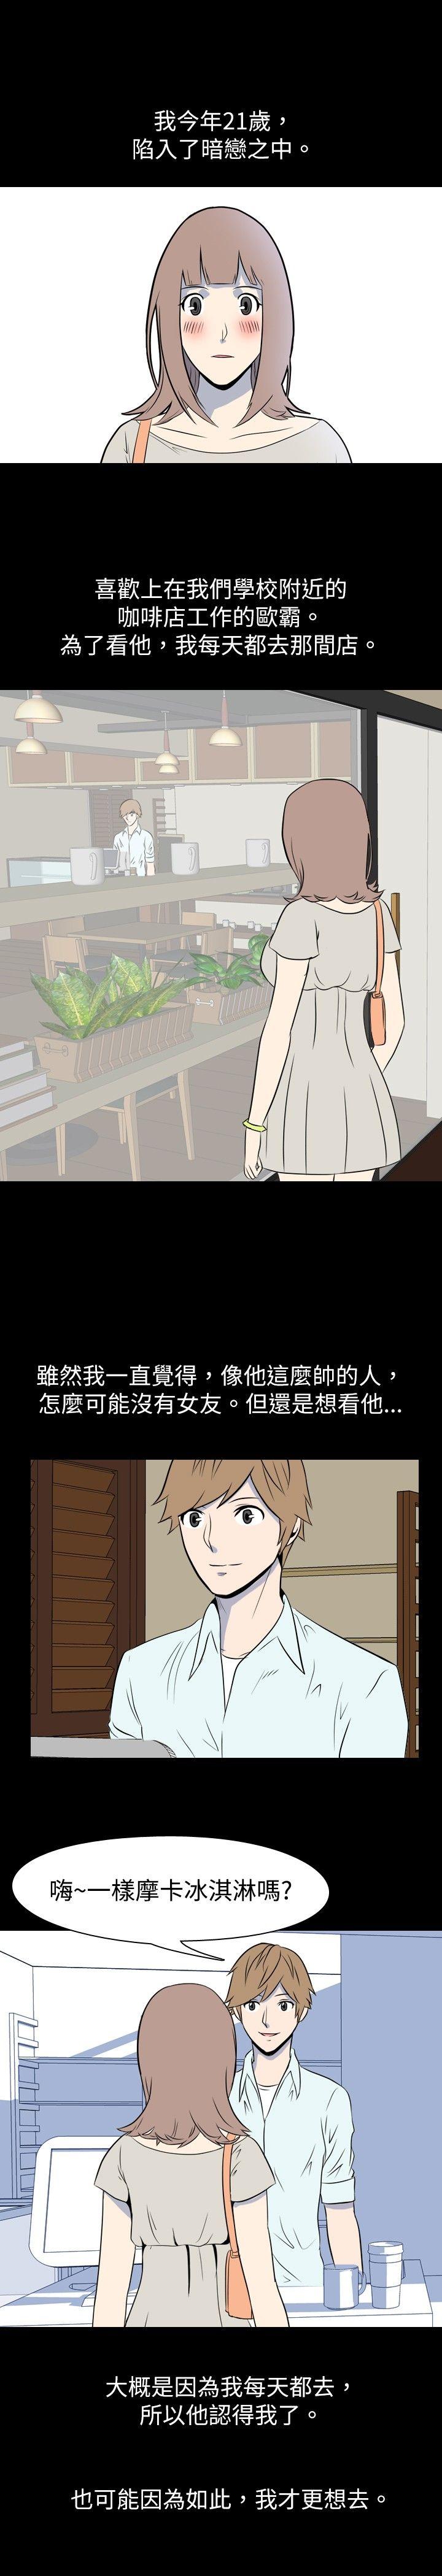 韩国污漫画 我的色色夜說 第11话-暗恋(上) 1